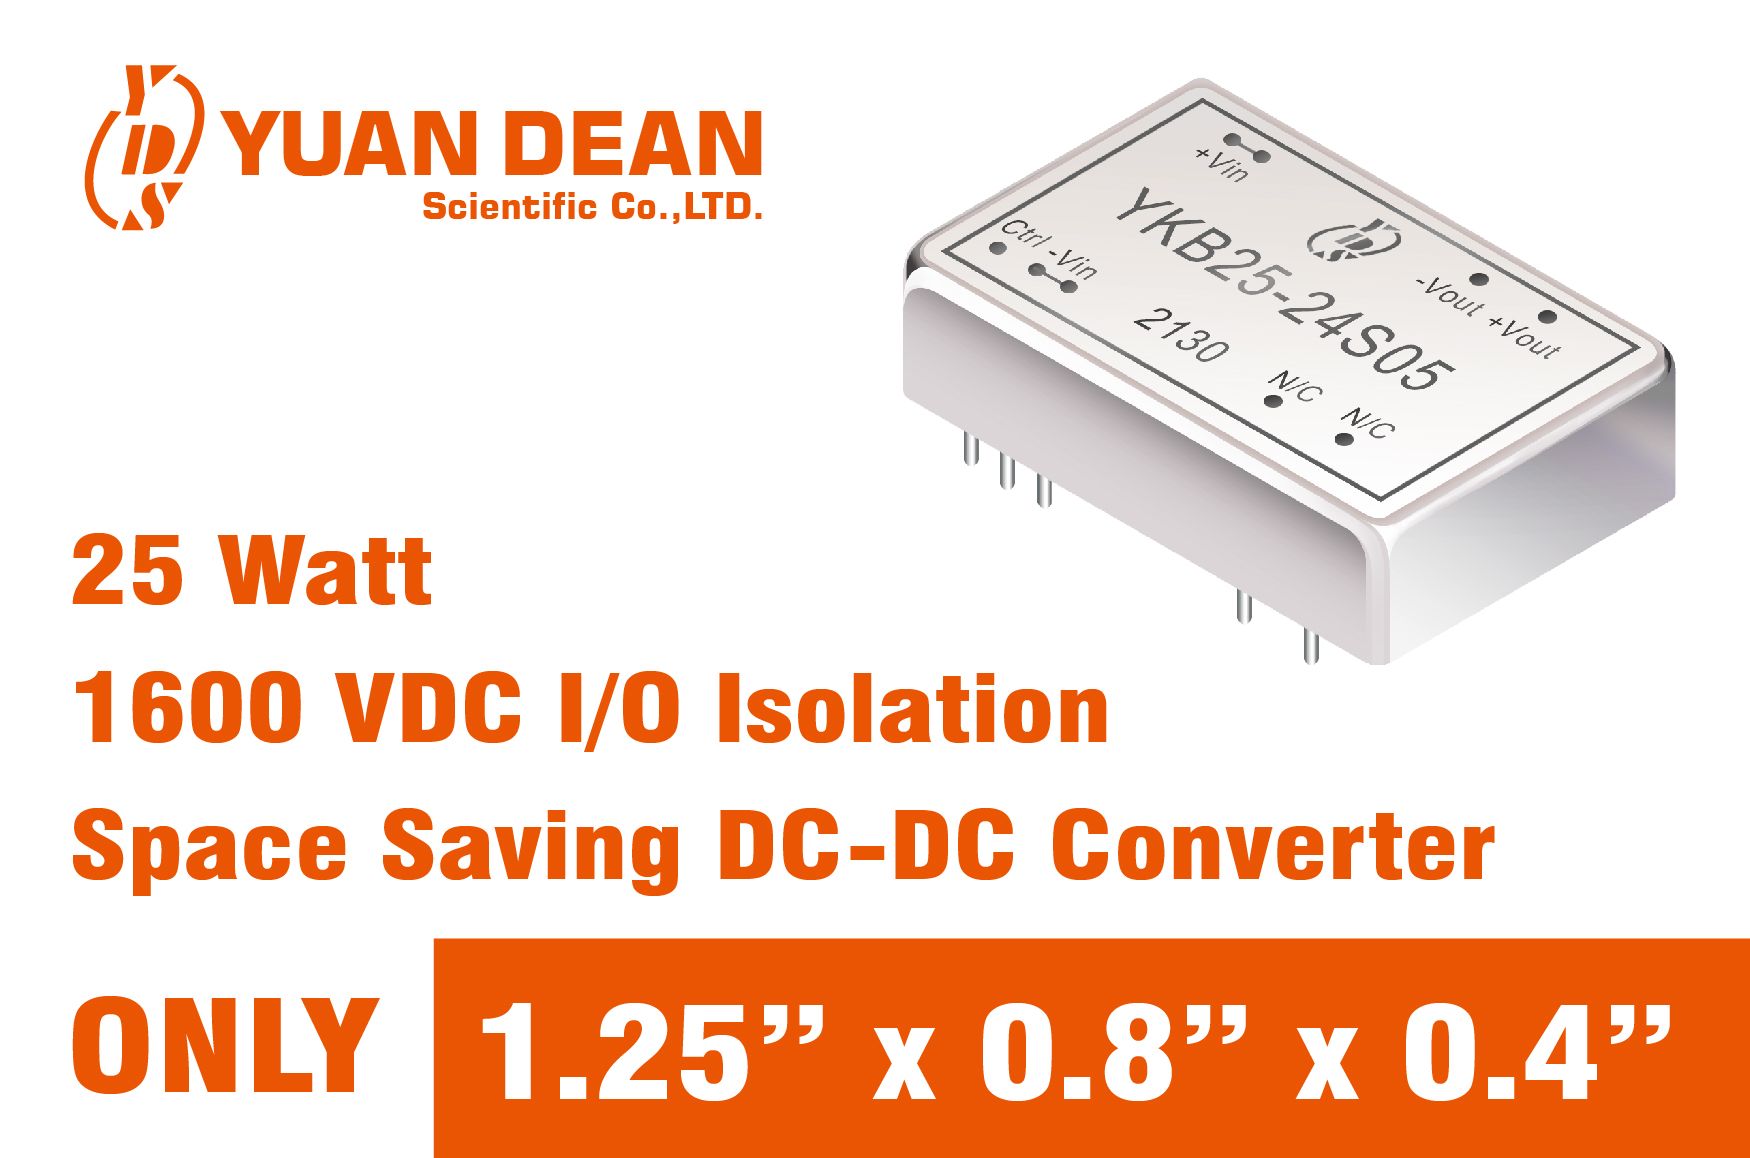 25 watt compact size DC-DC power converter